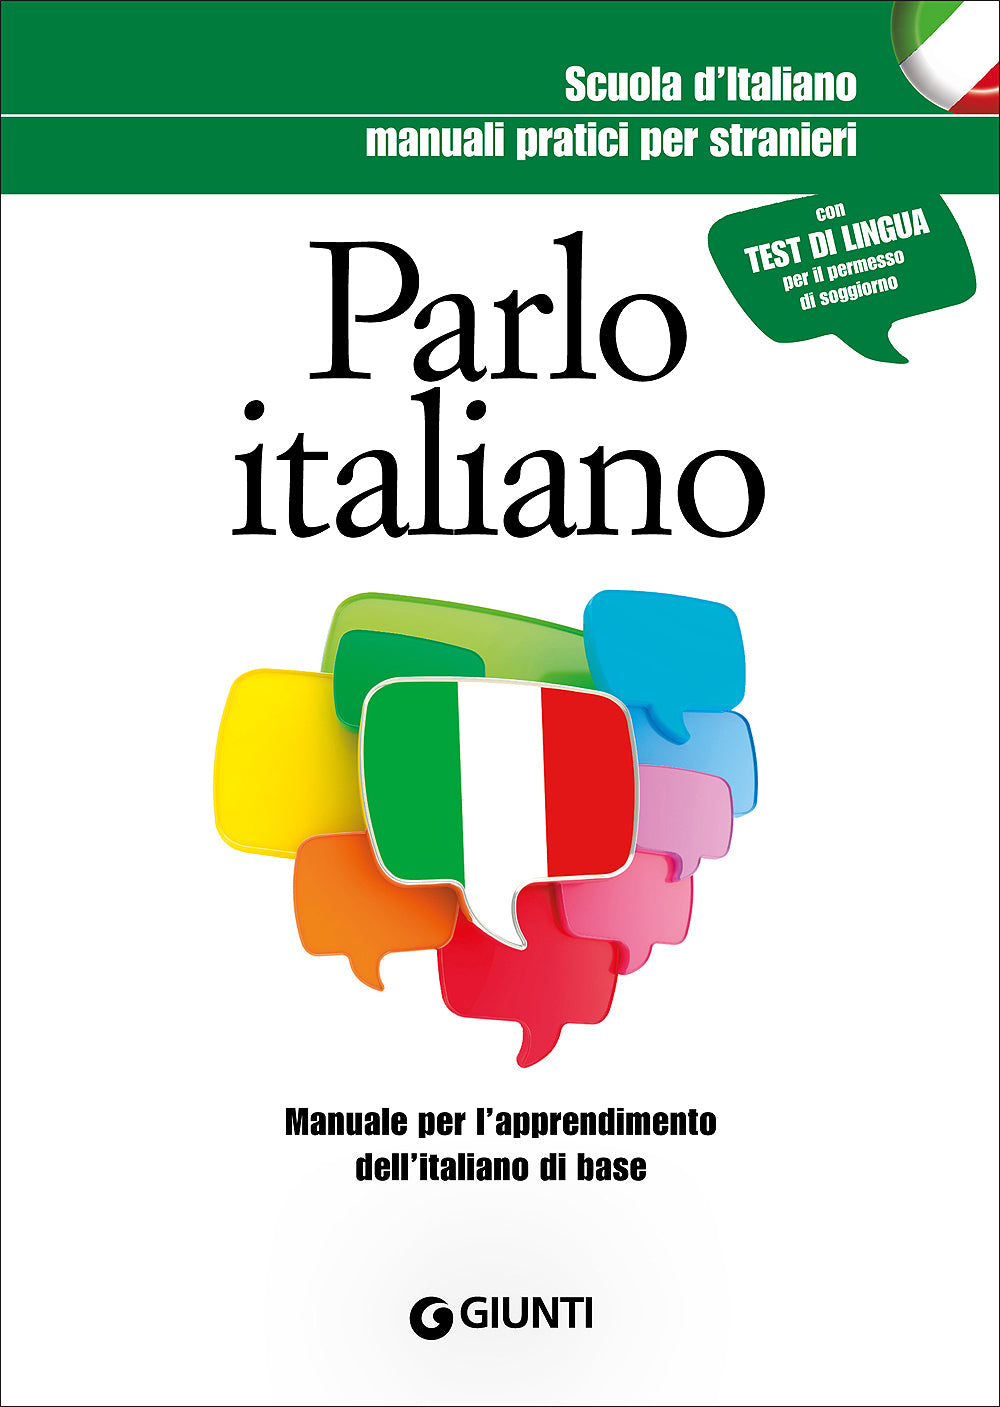 Parlo italiano. Manuale per l'apprendimento dell'italiano di base - Con test di lingua per il permesso di soggiorno